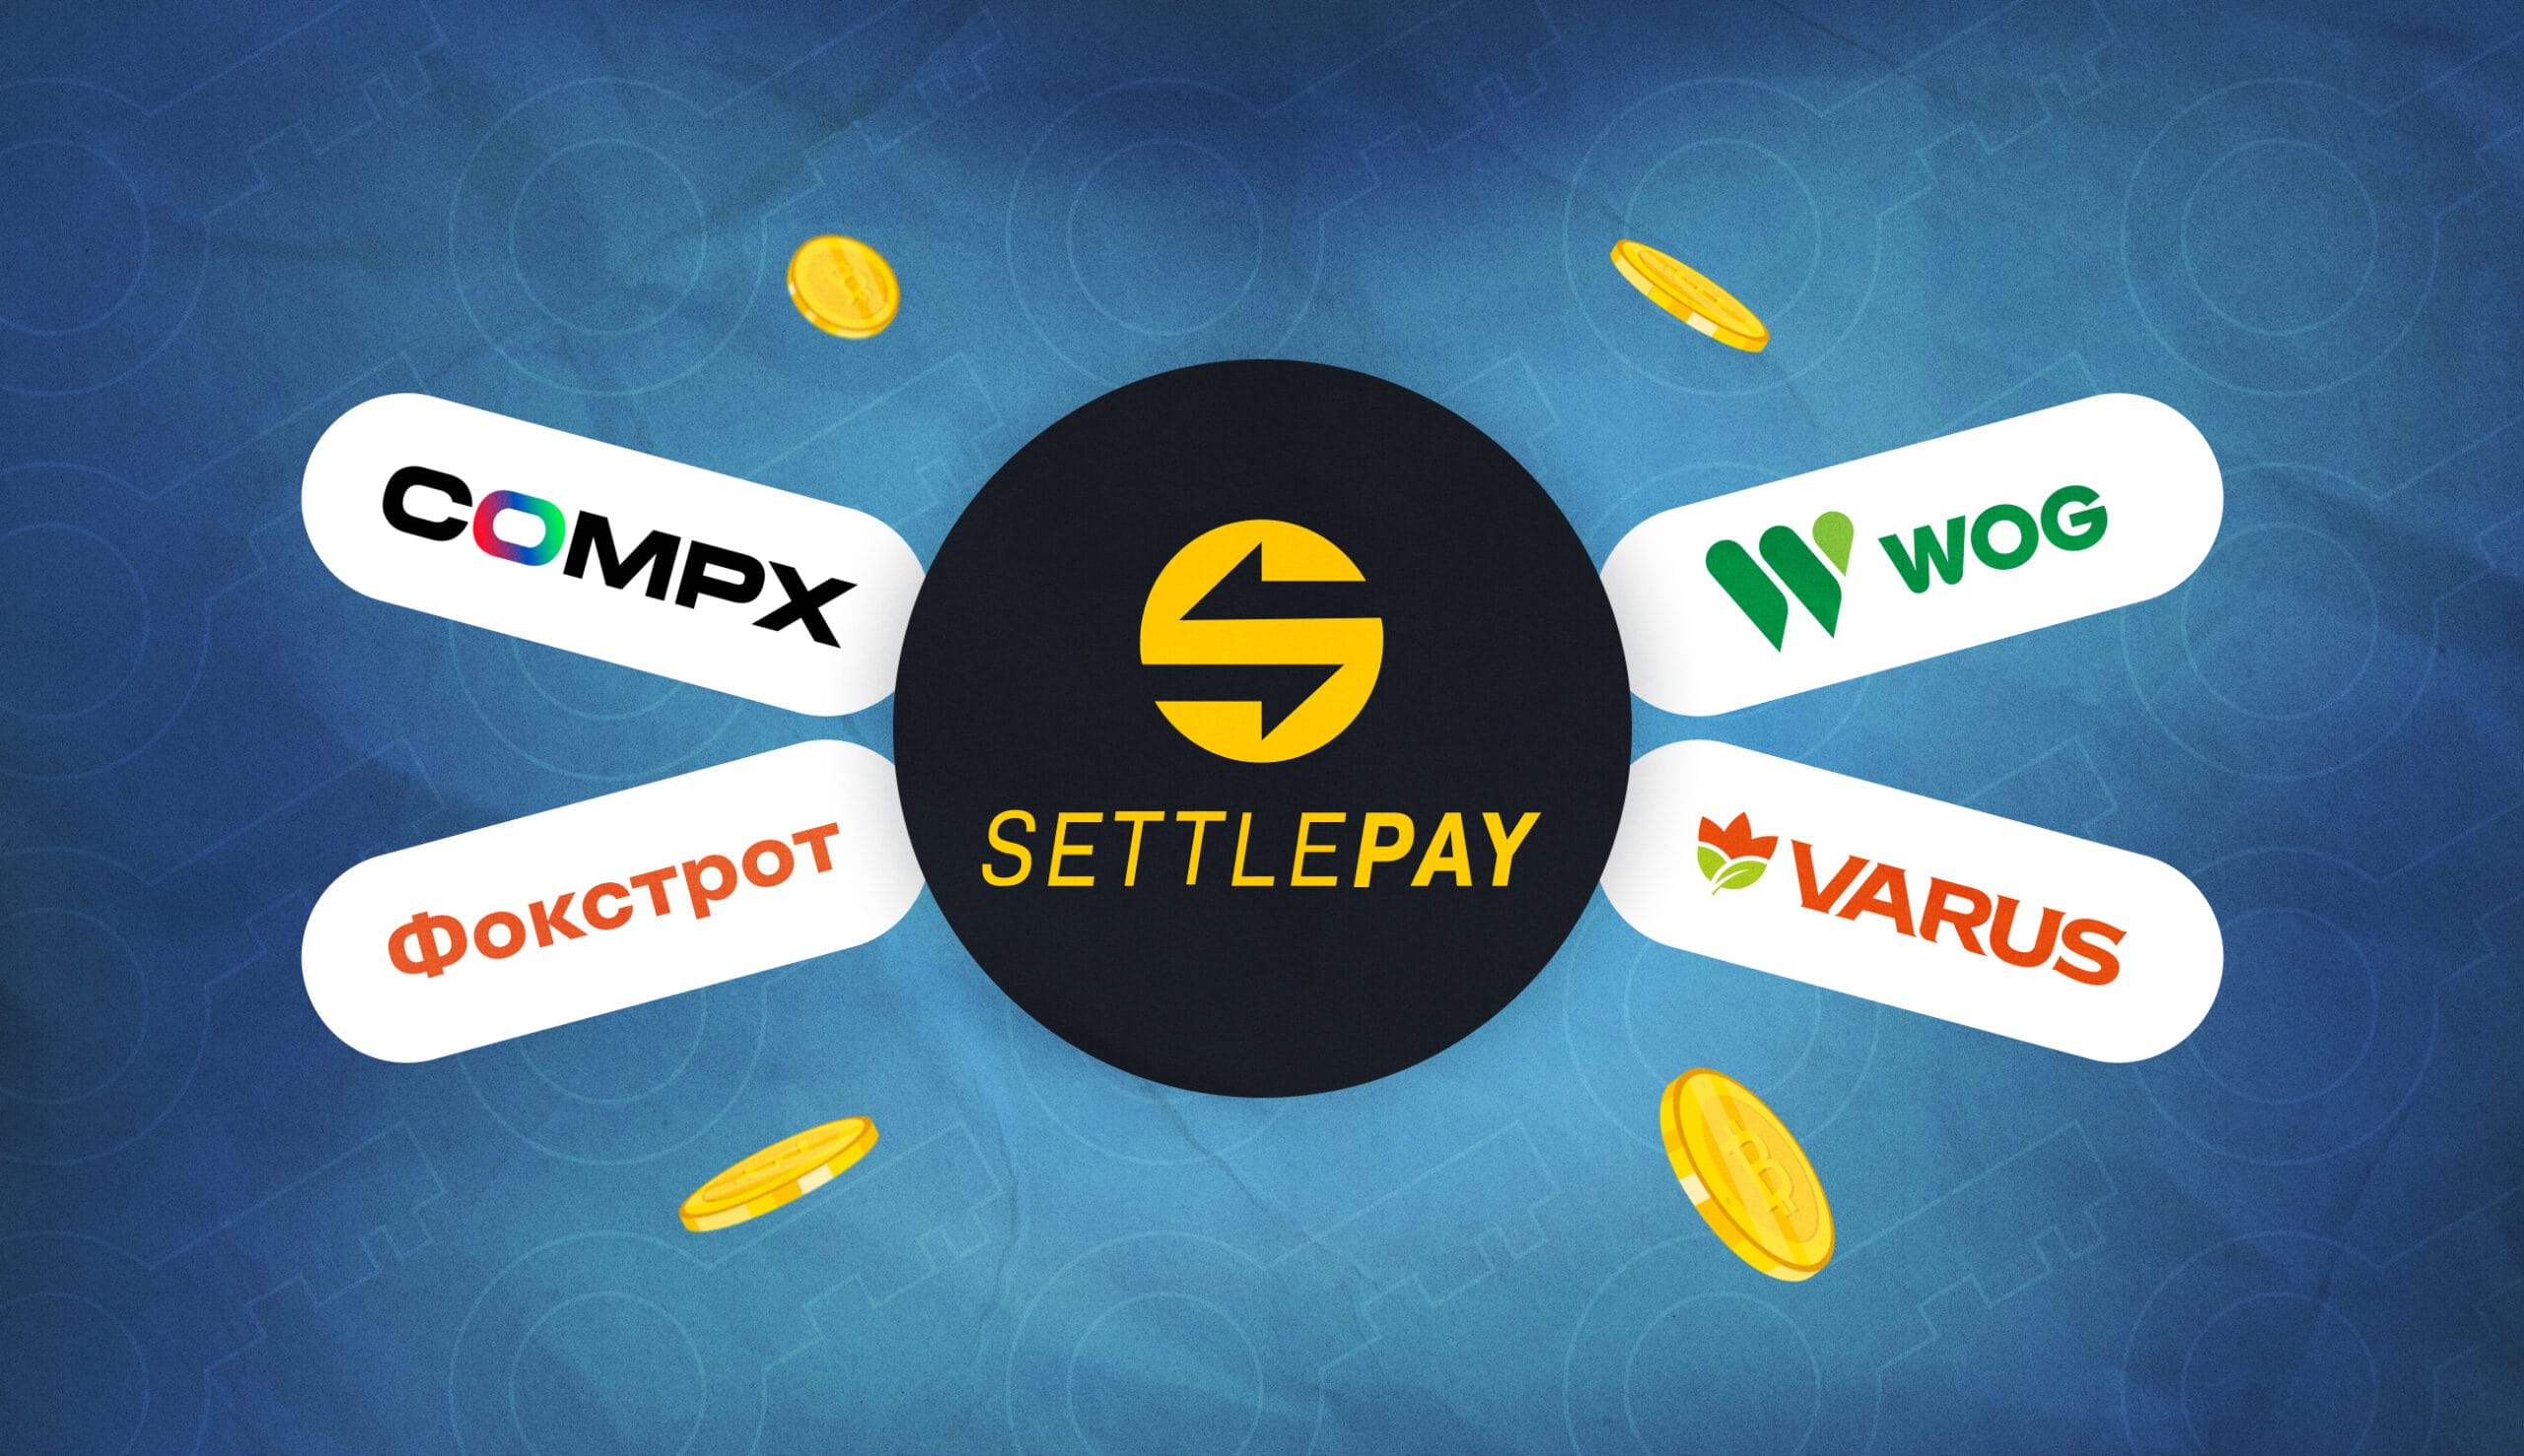 У WOG, VARUS, Фокстрот і CompX тепер можна оплатити криптою з сервісом SettlePay. Головний колаж новини.